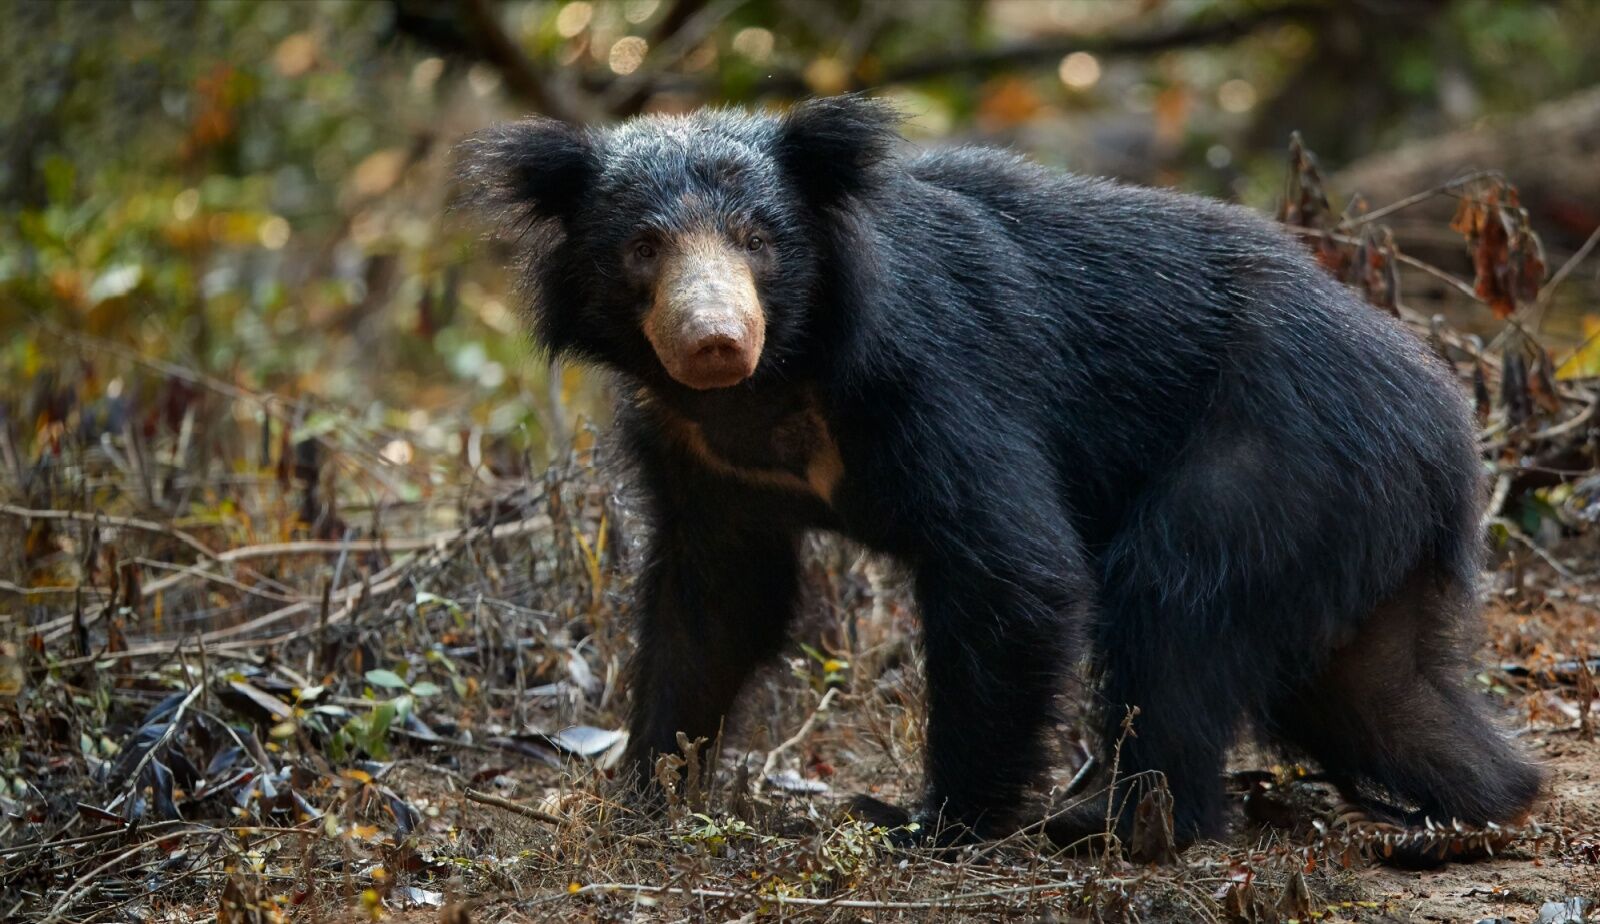 sloth bear in Sri Lanka - rare mammals 